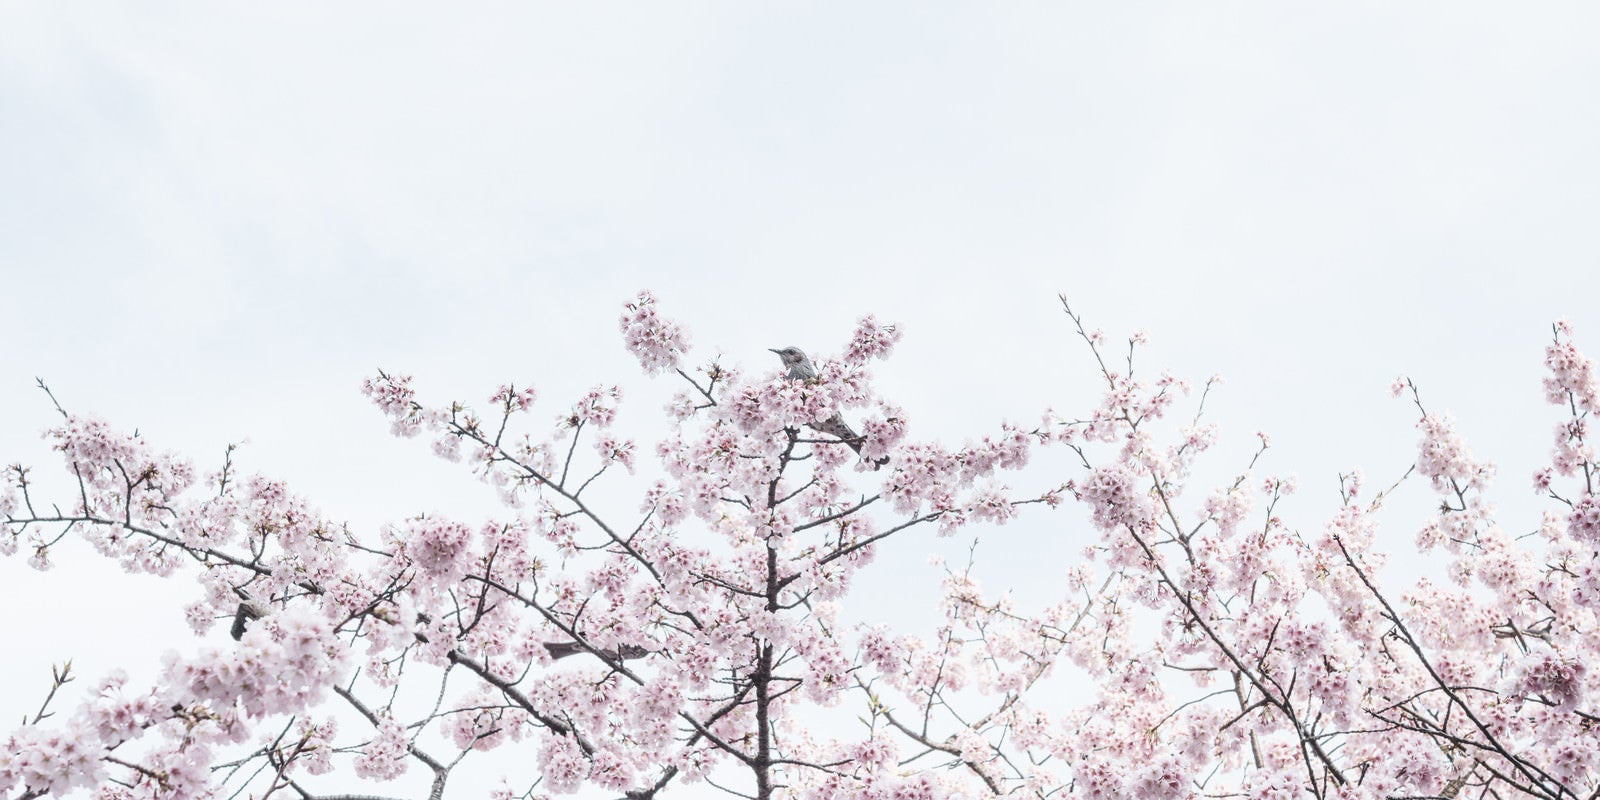 「満開の桜と野鳥」の写真